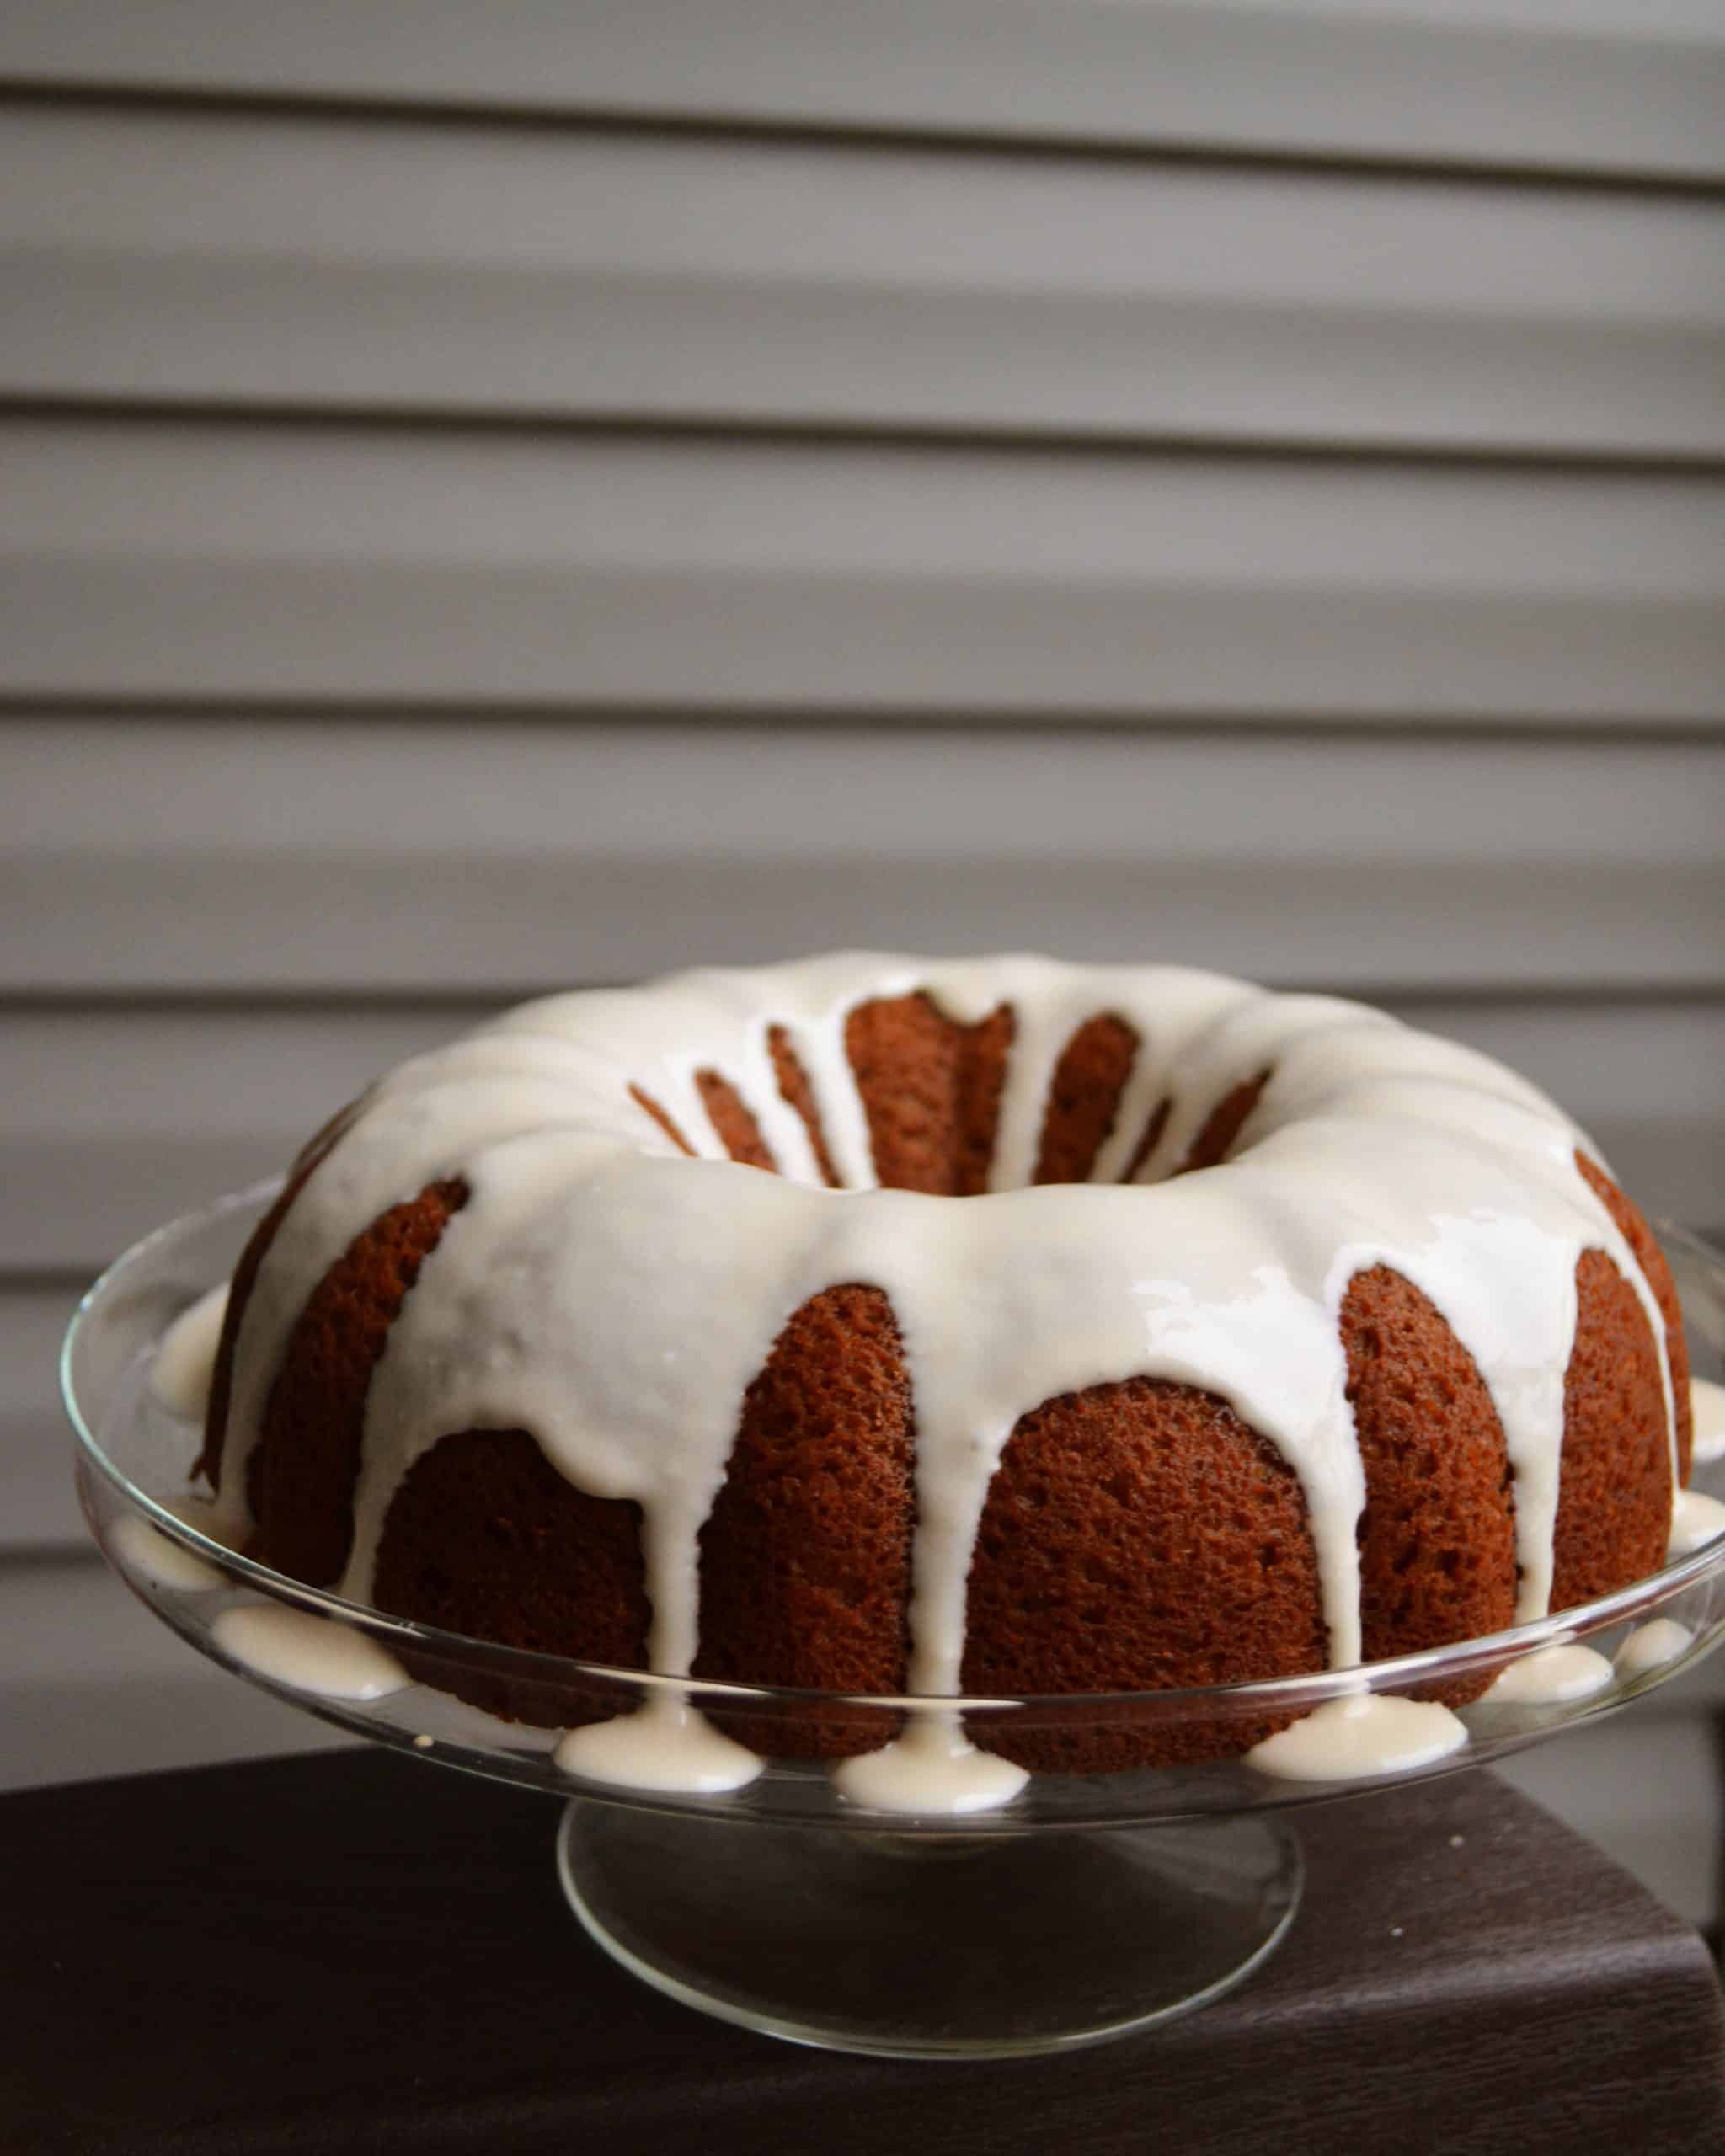 How To Perfectly Glaze A Bundt Cake